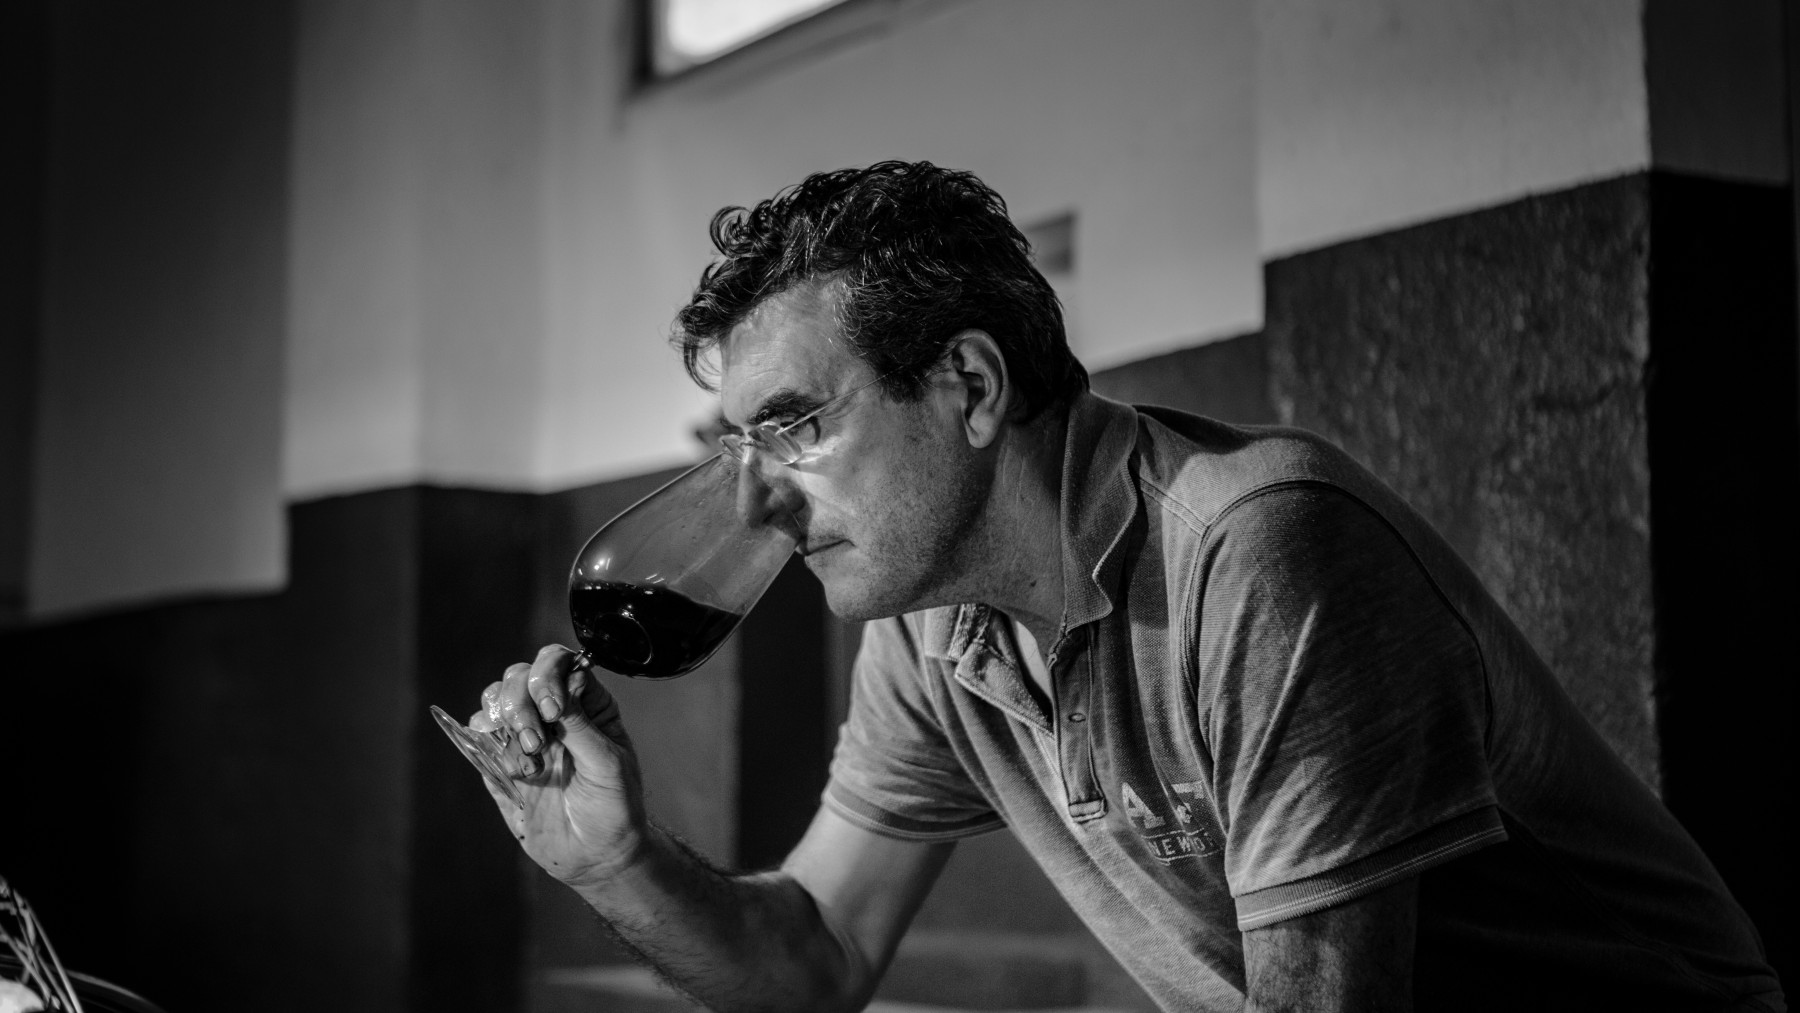 Tarima Hill, el vino de Alicante entra en la lista ‘Wine Spectator’ y ya es uno de los más aclamados